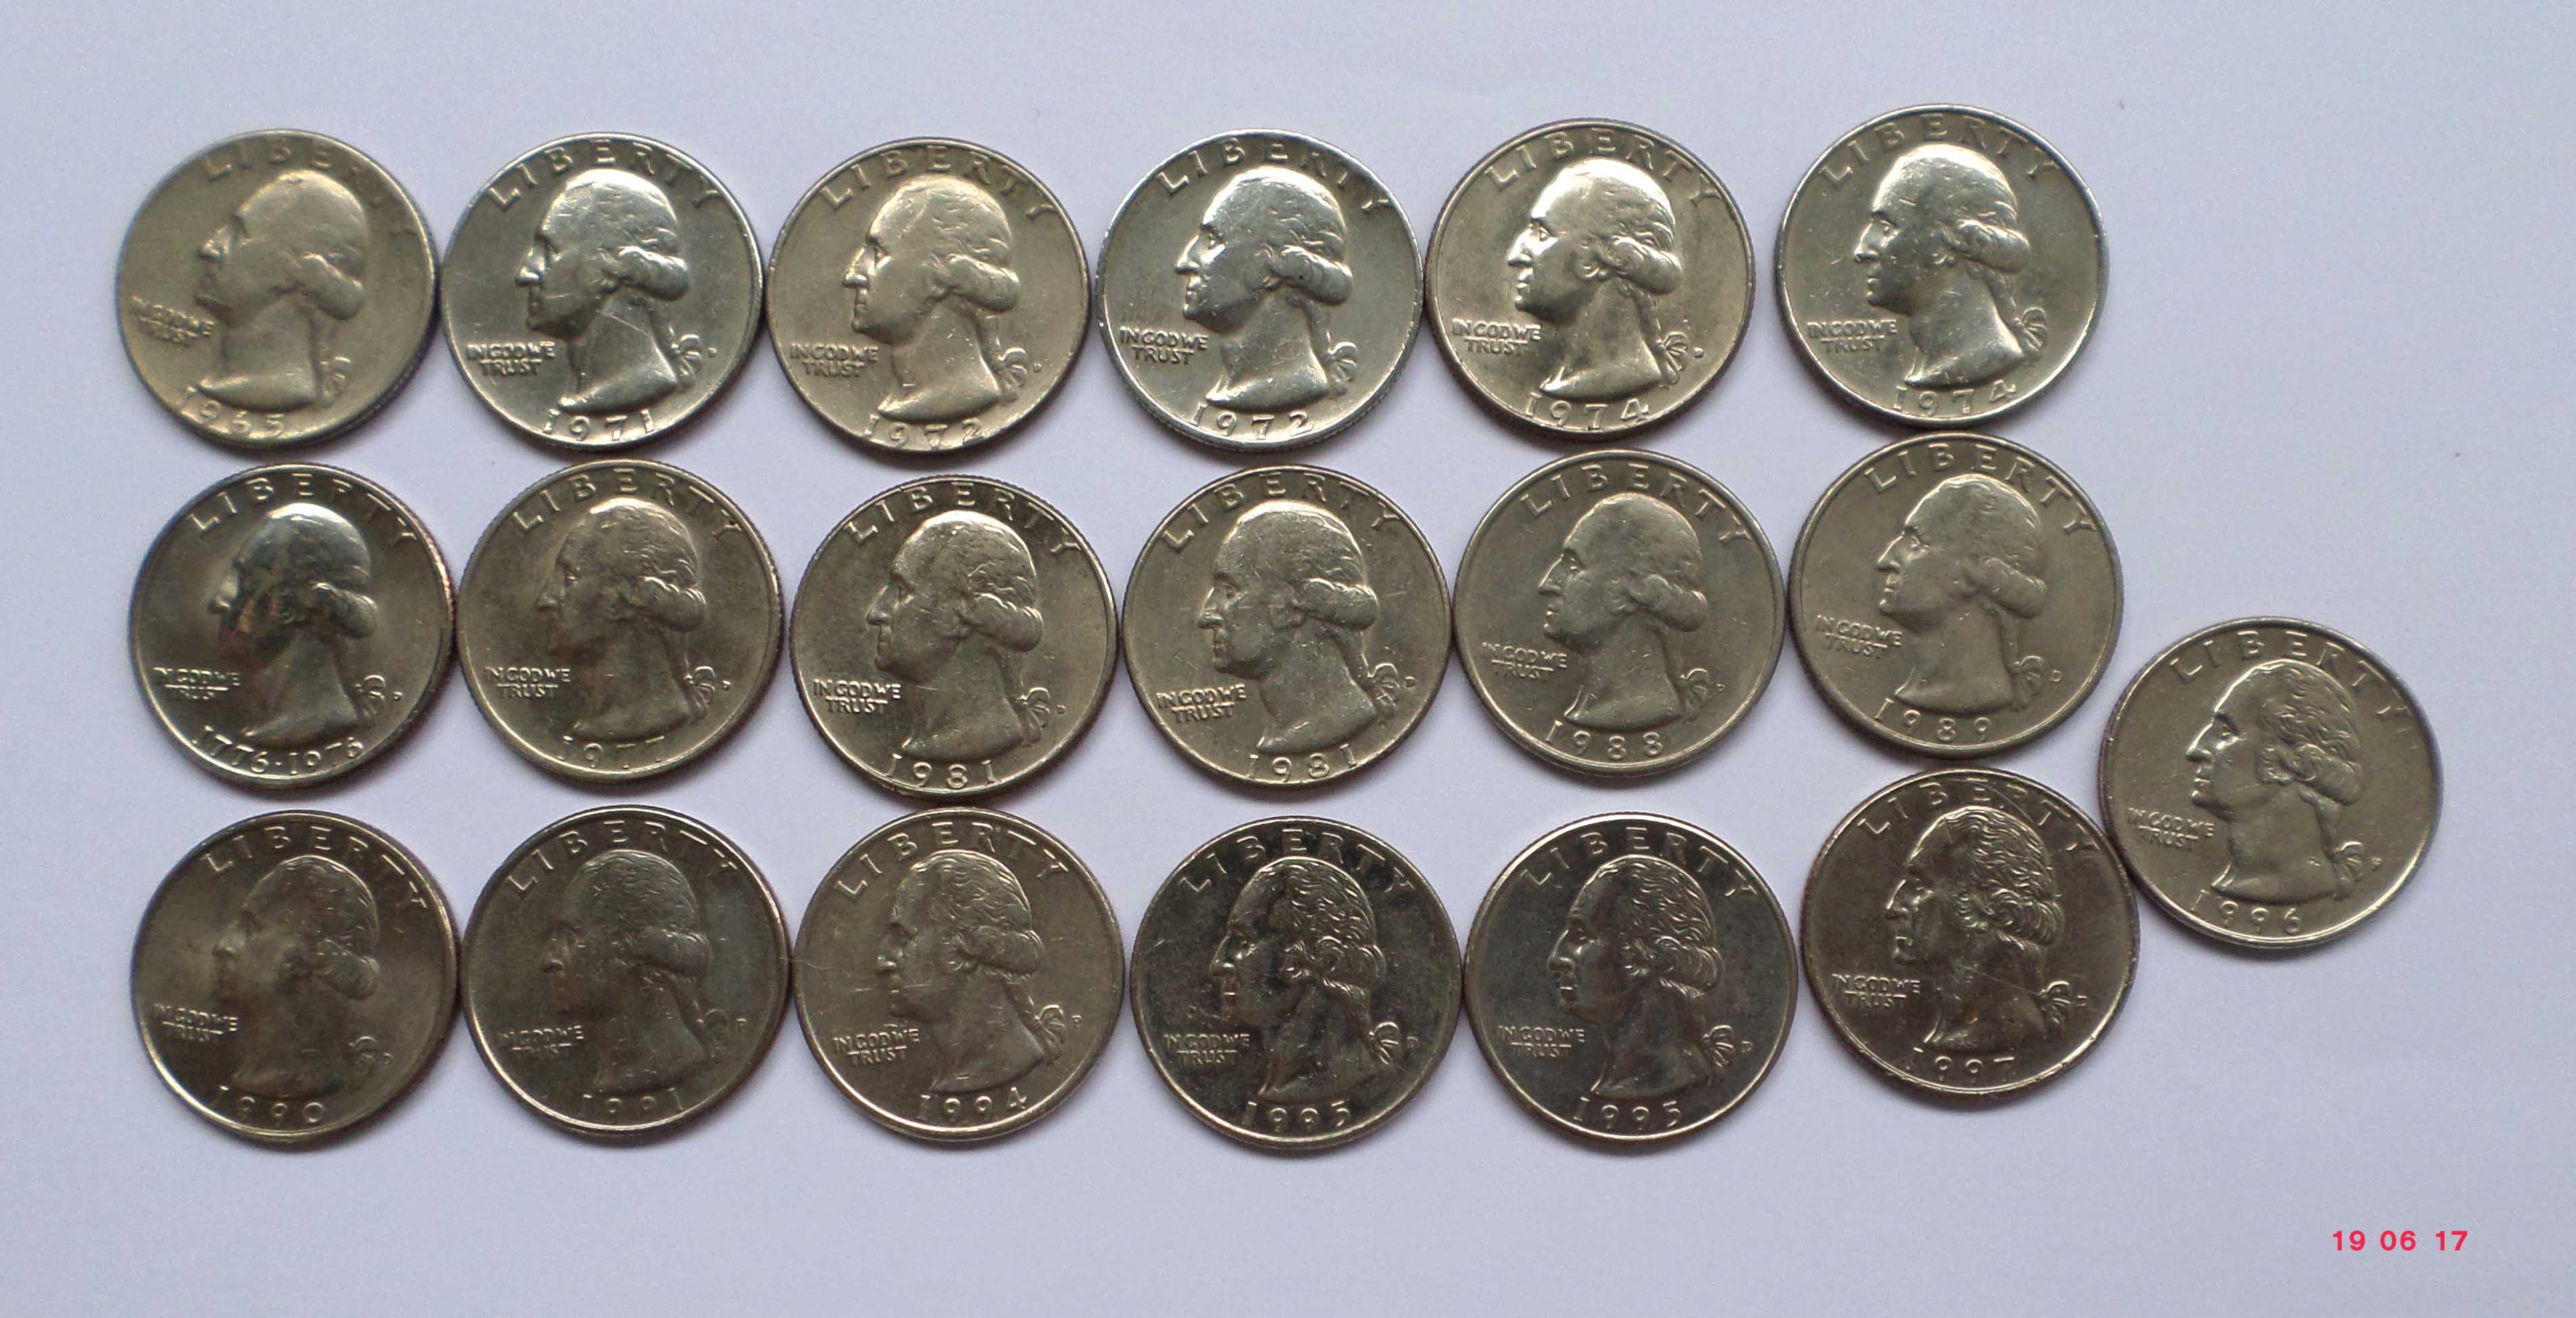 อยากรู้ข้อมูล..เหรียญ..Quarter Dollar Liberty ปี 1967.(อเมริกา )นิยมเก็บหาสะสมกันไหม?เป็นเหรียญเก่าหายากเปล่าครับ?. - Pantip